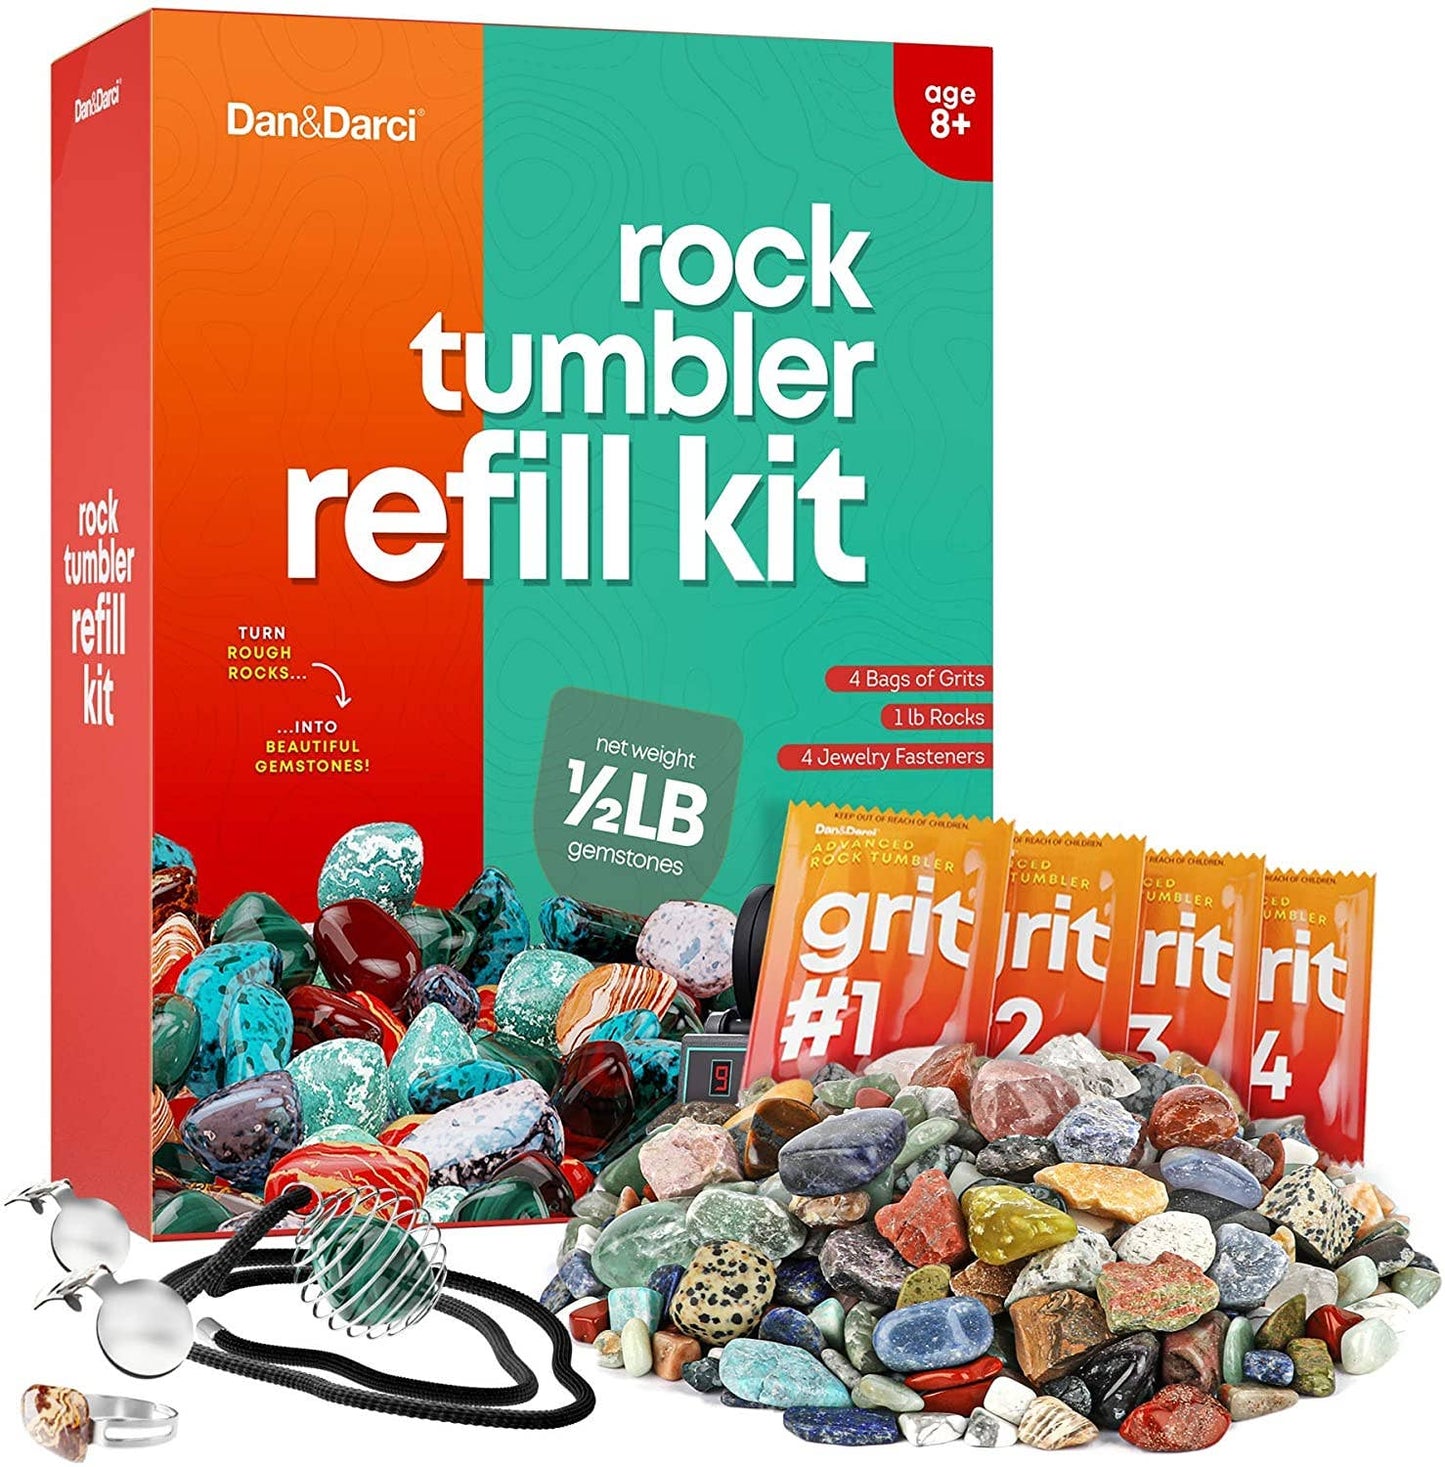 Surreal Brands - Rock Tumbler Refill Kit